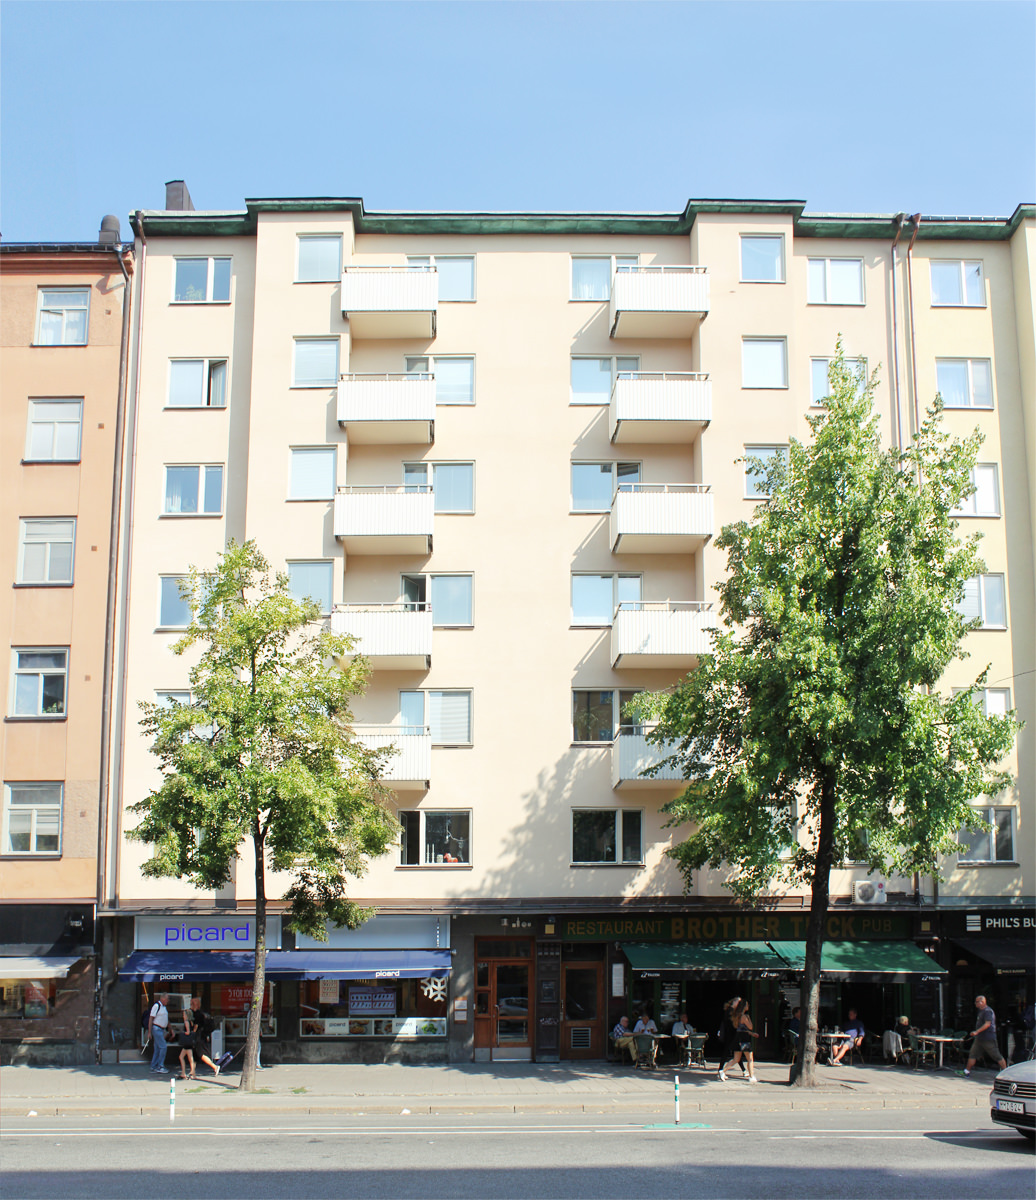 Fastigheten Obelisken 23 på Götgatan 85 på Södermalm.